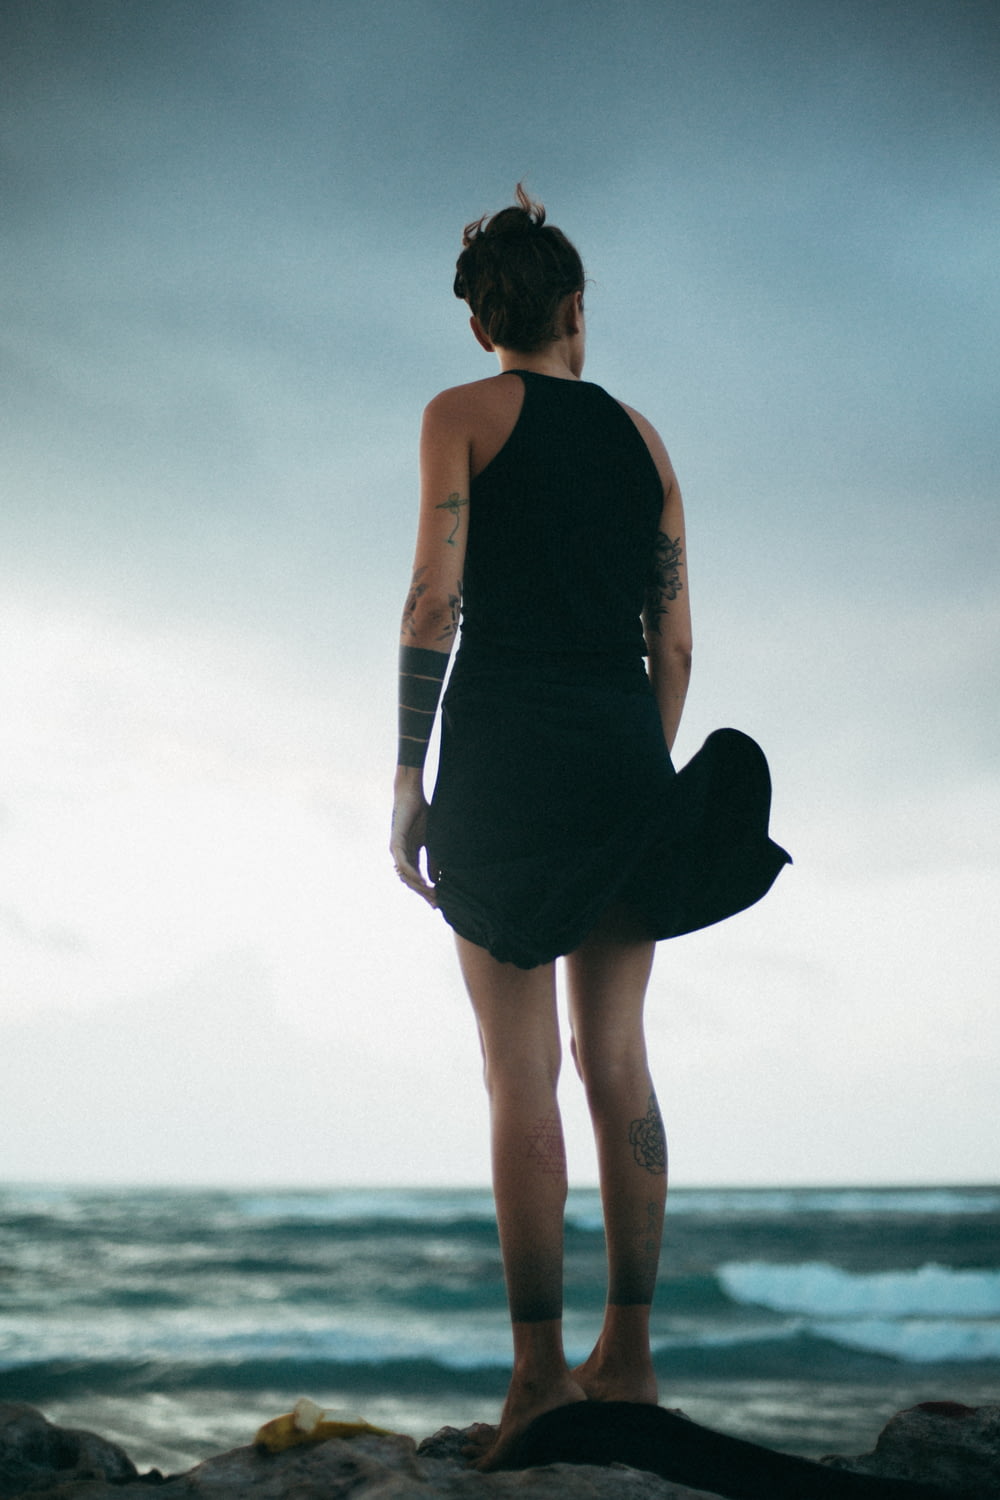 mulher em pé na rocha olhando para o mar durante o dia